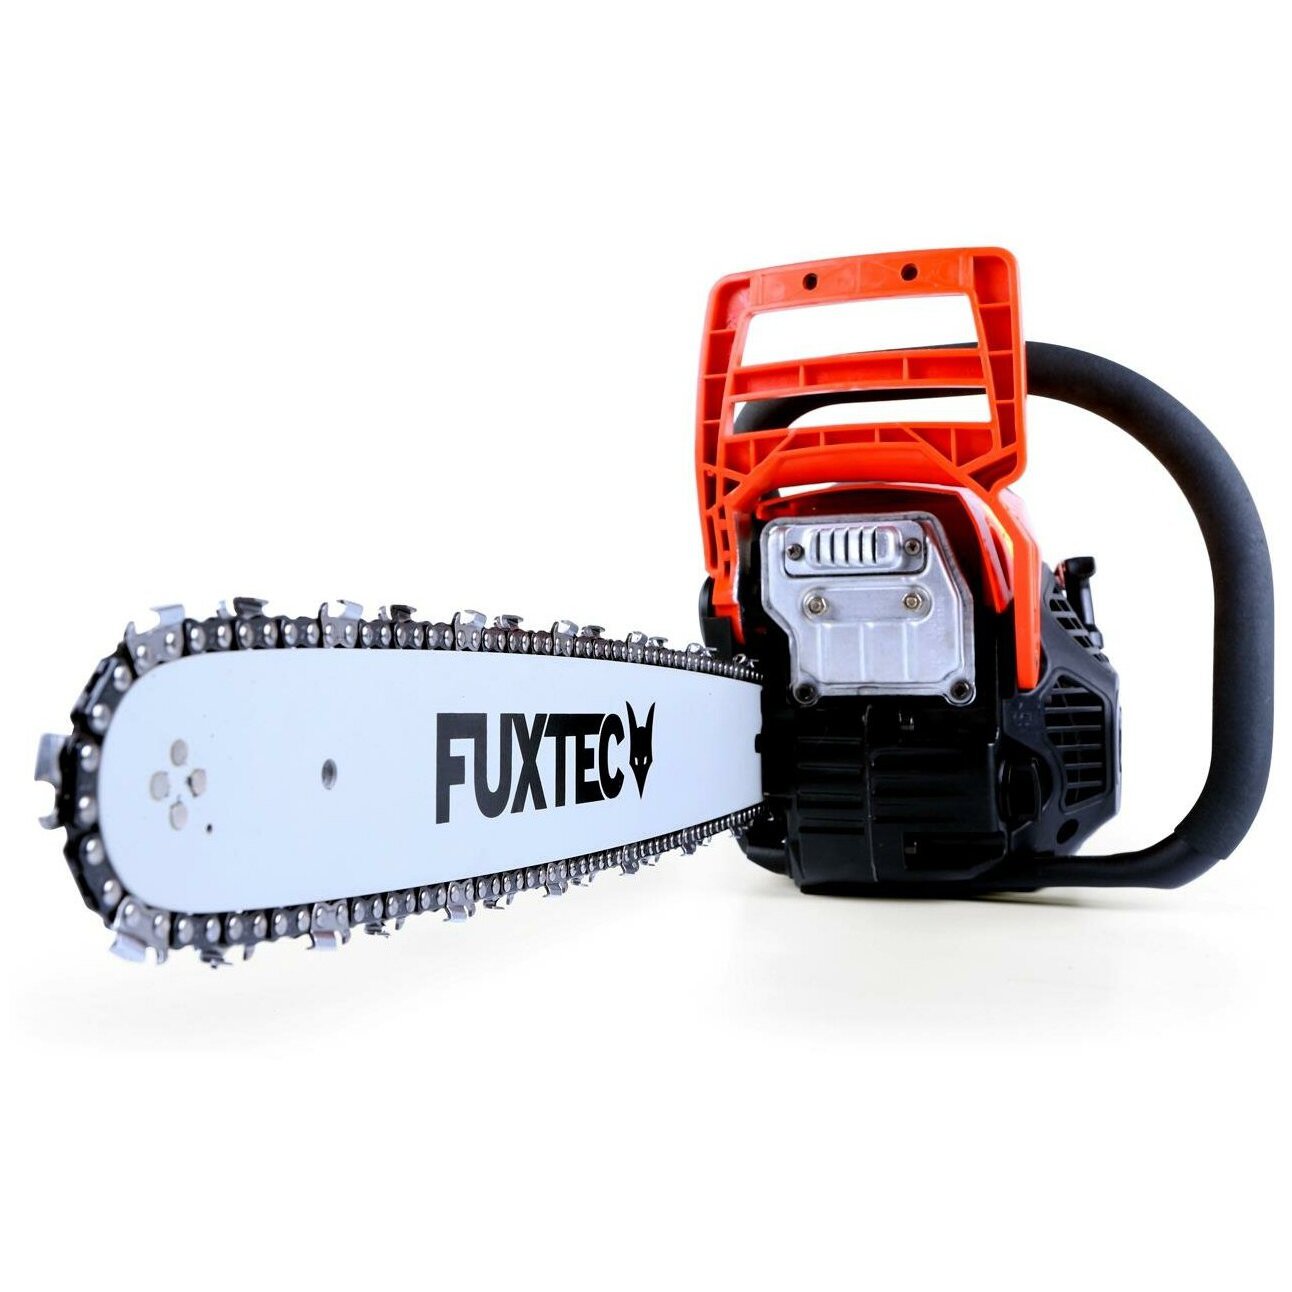 FUXTEC FX-KSP155 46 см Profissional